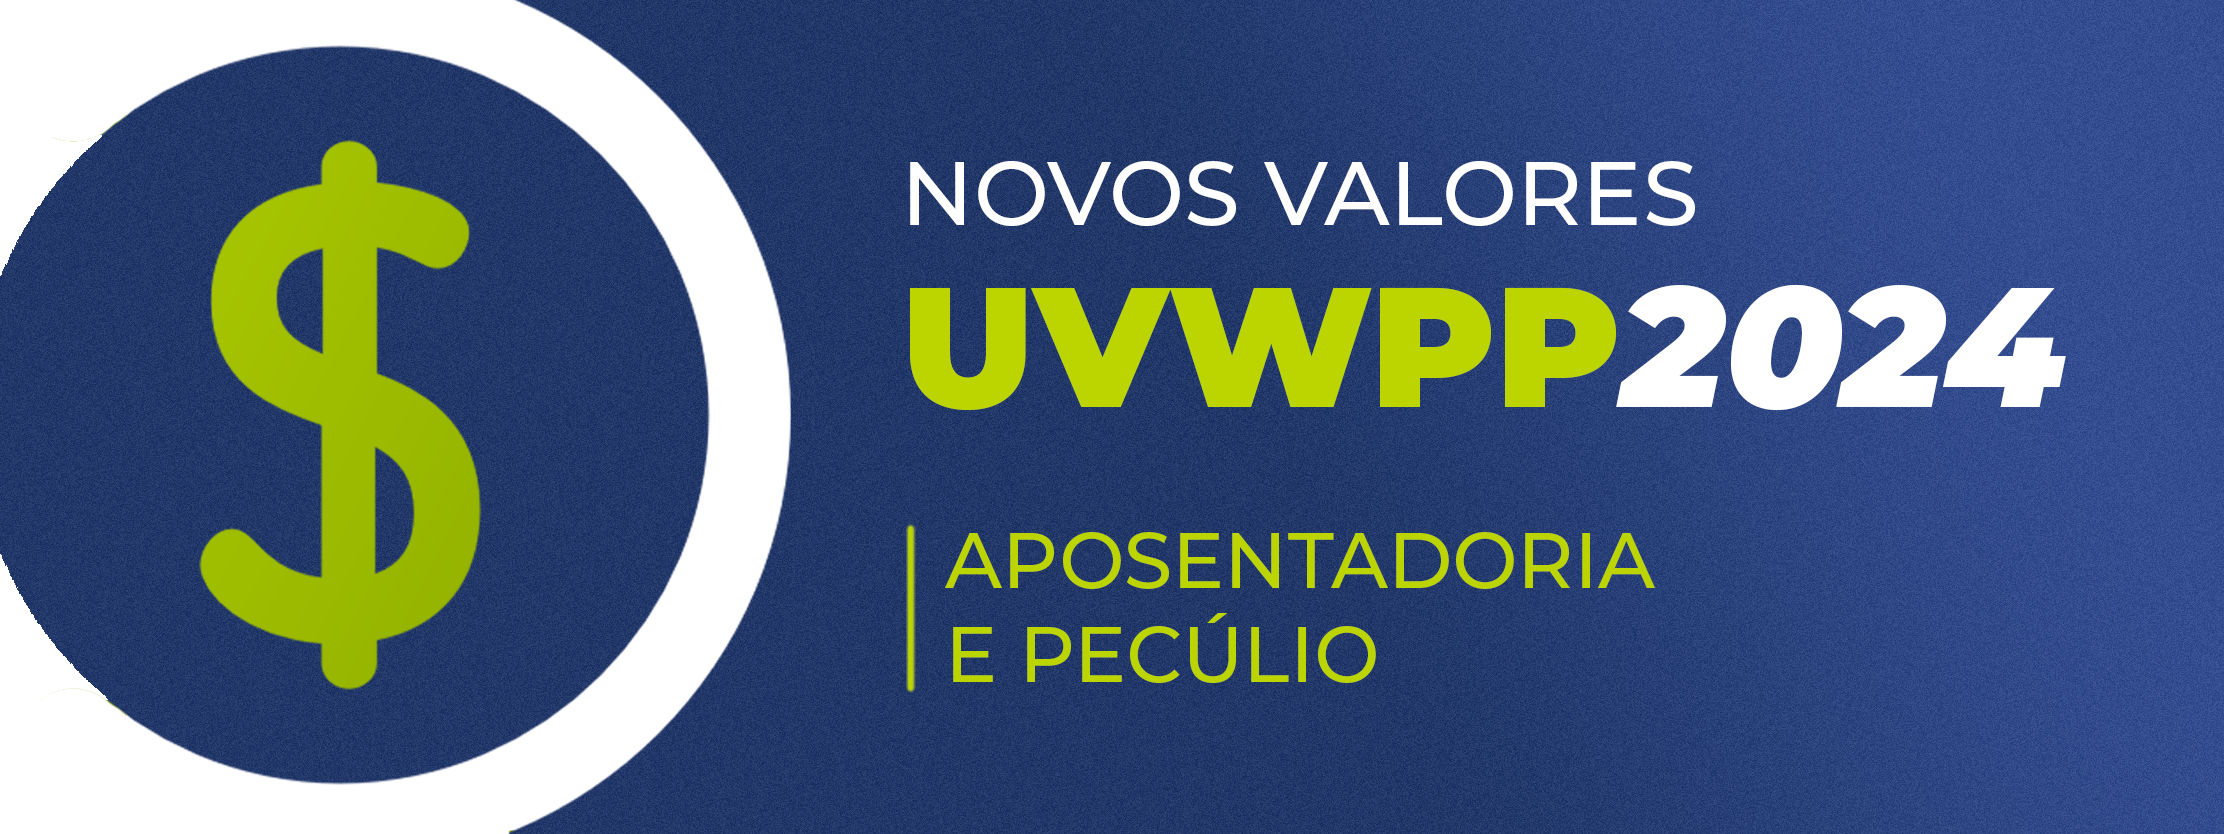 A VVWPP divulga os novos valores de aposentadoria e pecúlio confira